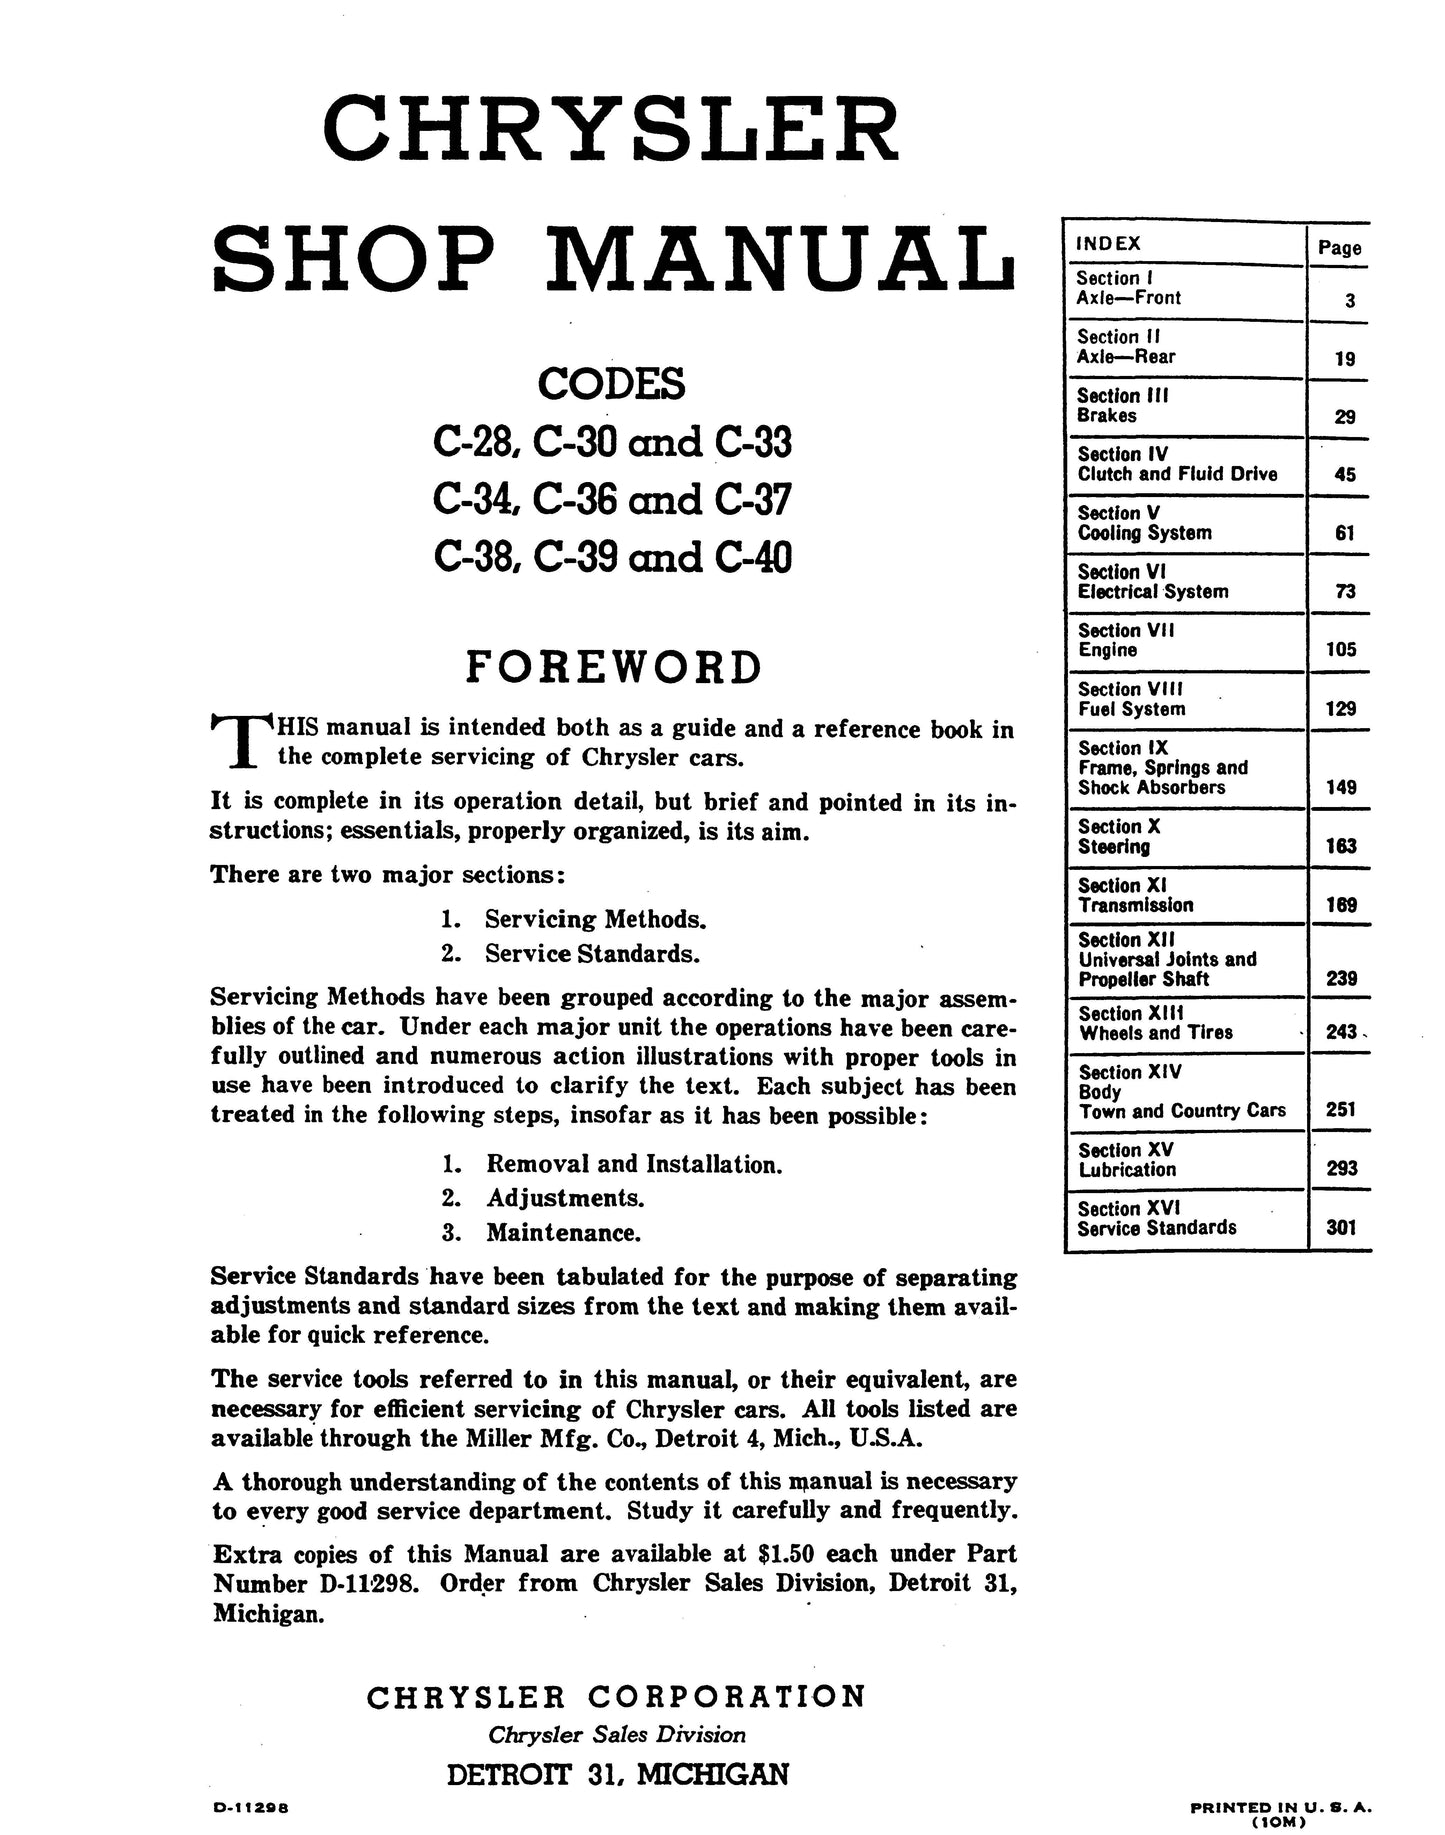 1940-1948 Chrysler Shop Manual All Models